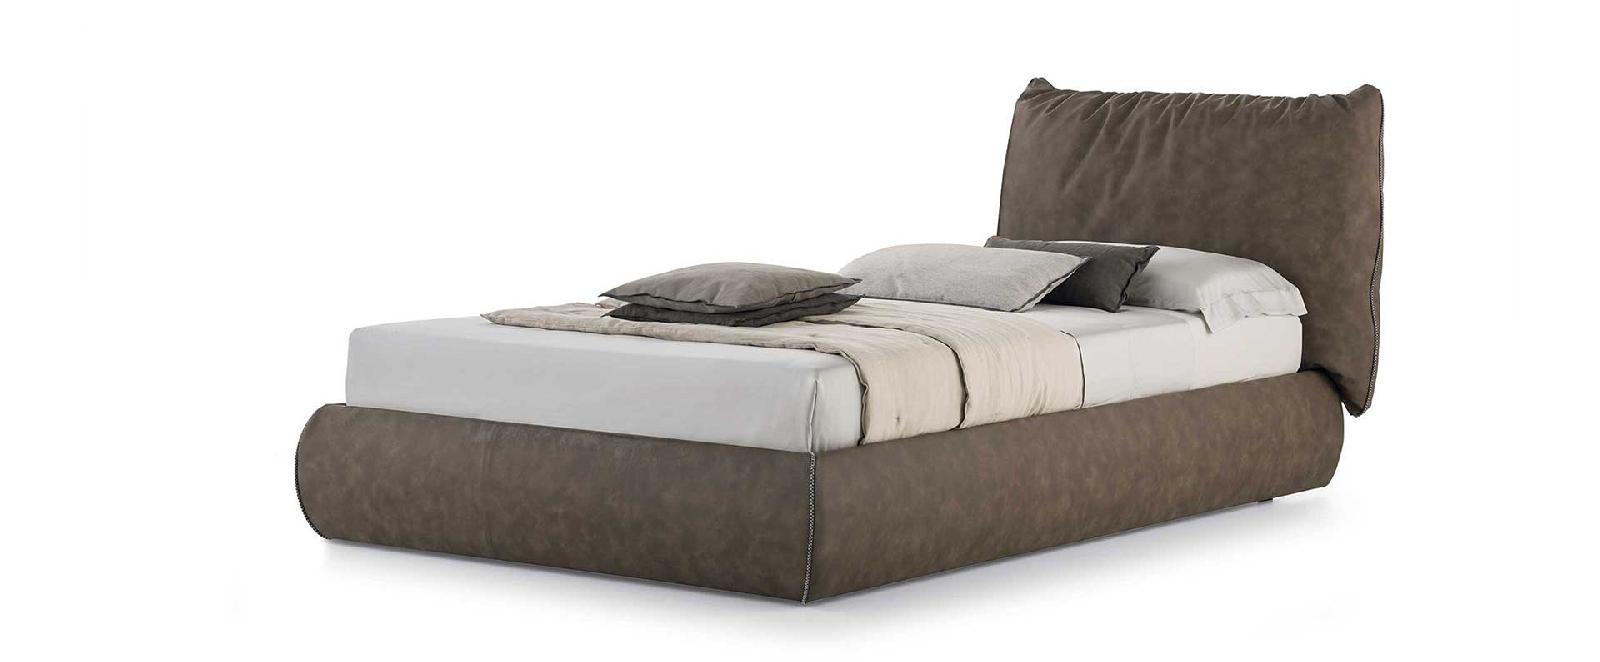 Кровати для подростков: модель Sogno